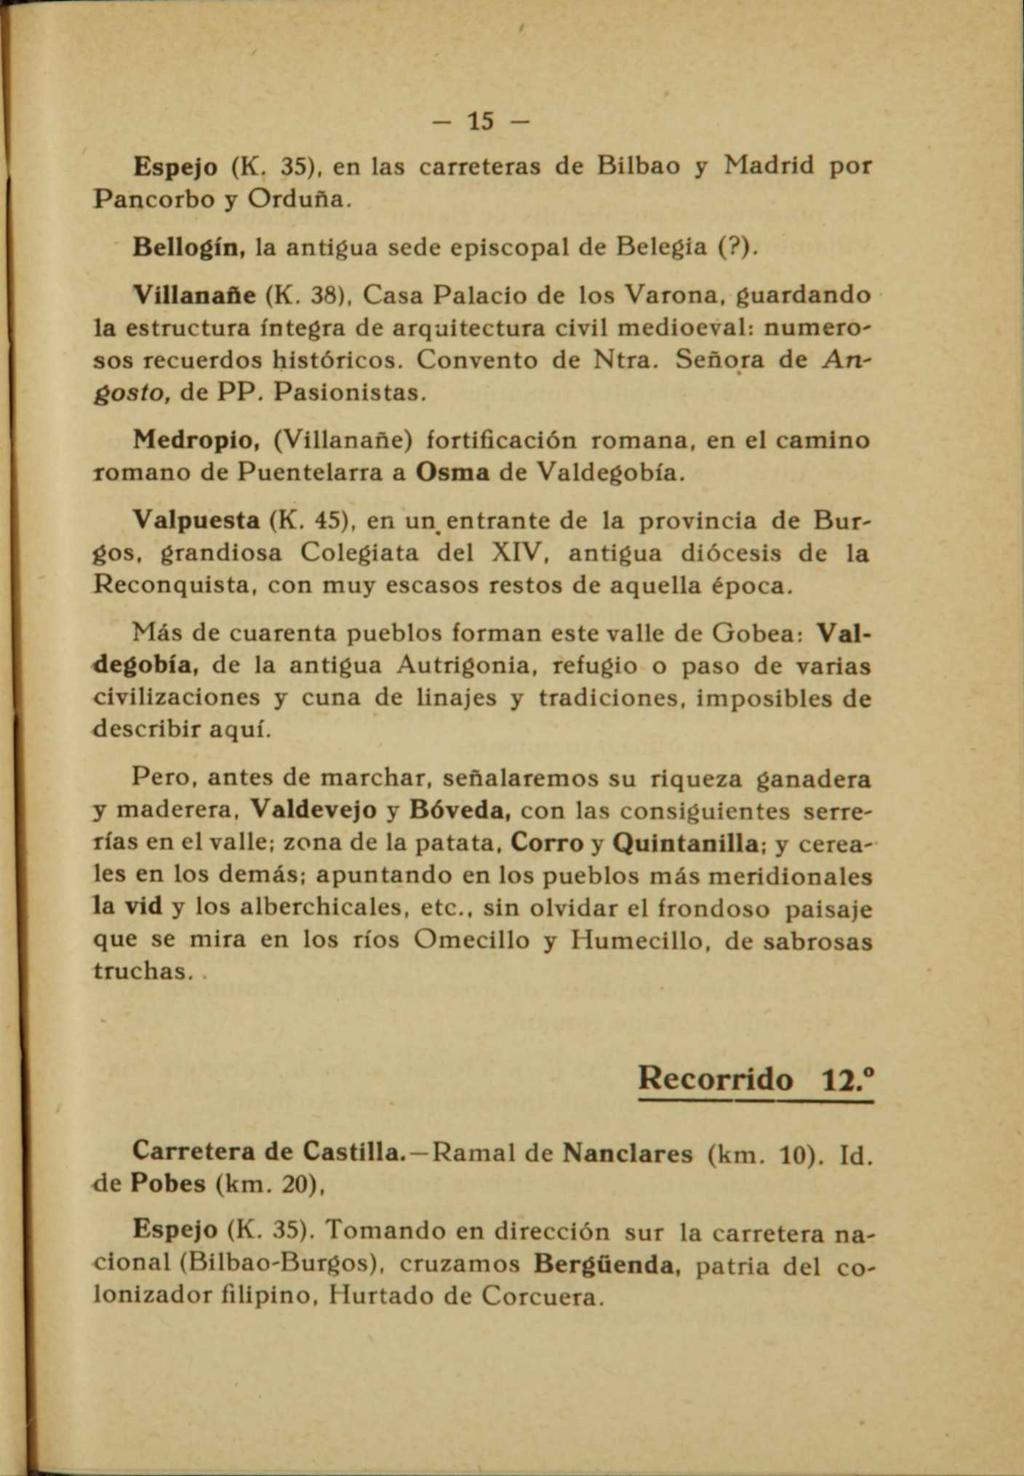 - 15 - Espejo (K. 35), en las carreteras de Bilbao y Madrid por Pancorbo y Orduña. Bellogín, la antigua sede episcopal de Belegia (?). Villanañe (K.